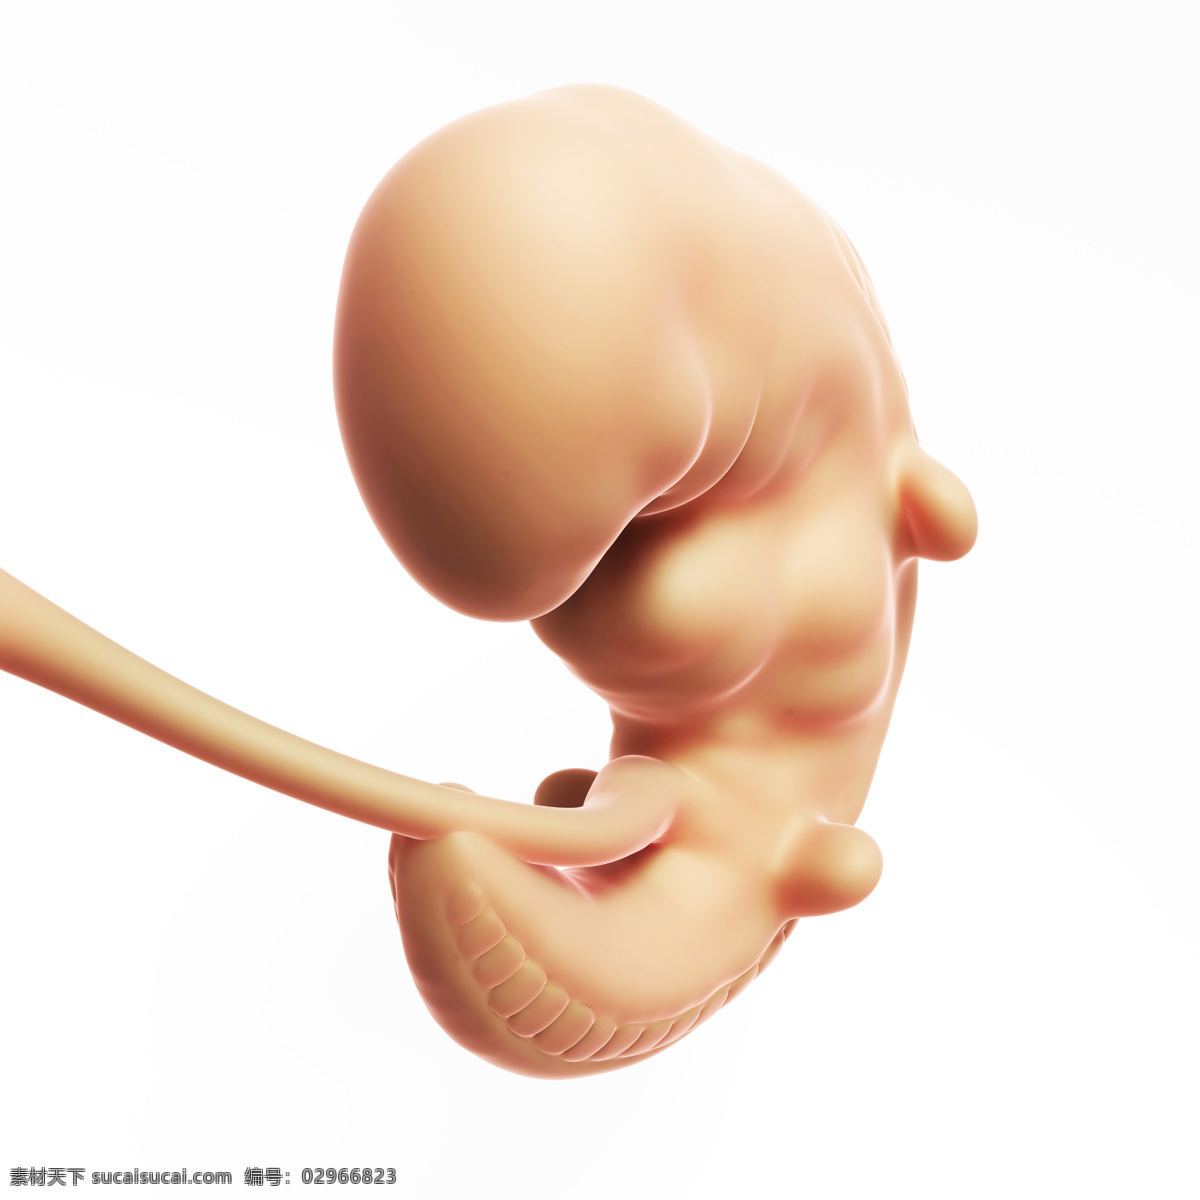 半 发育 胎儿 半发育 婴儿 孕育 胚胎发育 儿童图片 人物图片